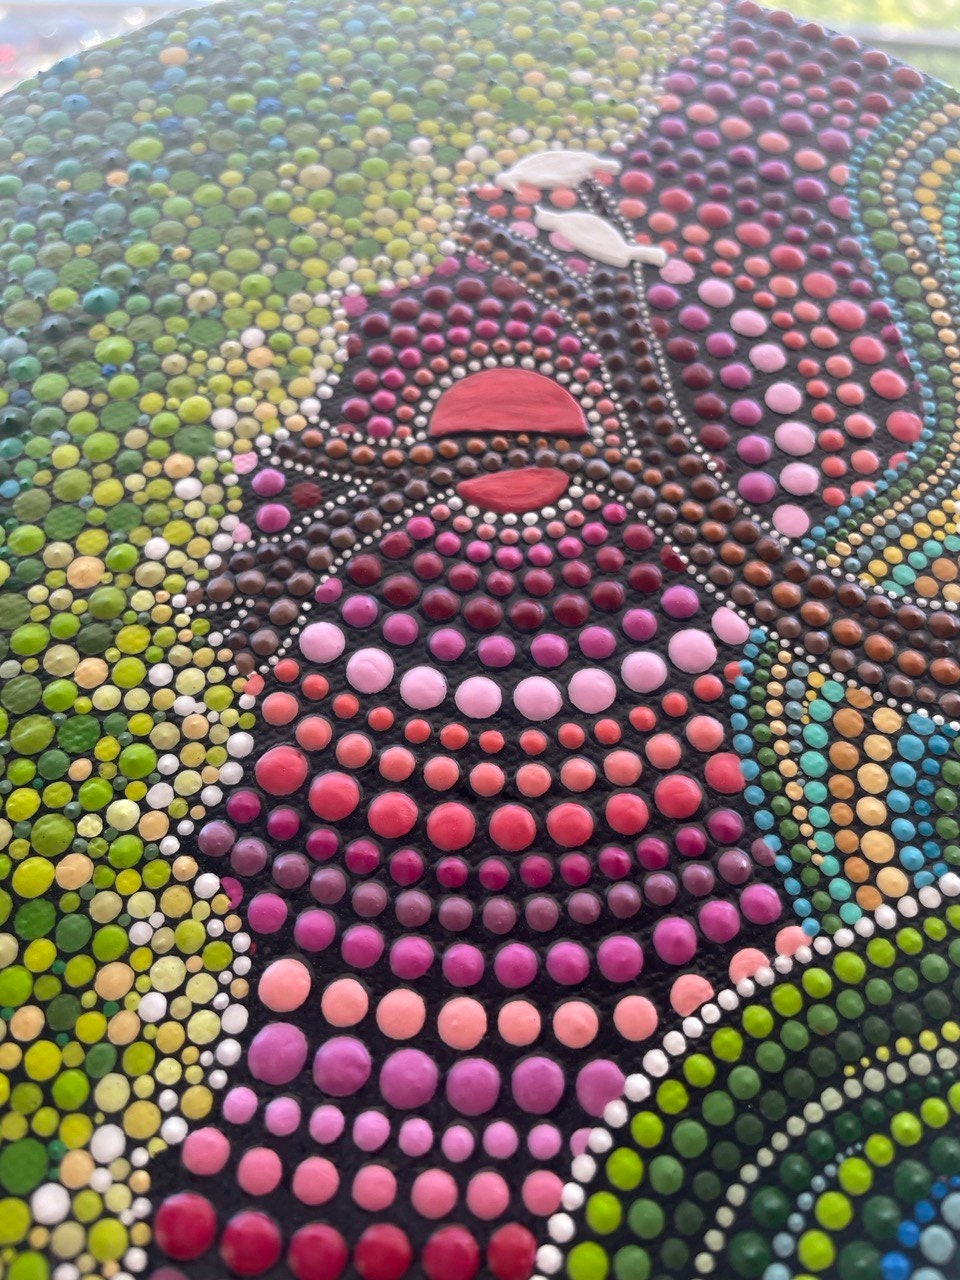 3d Dot Art Mandala on Canvas, Tree of Life Mini Painting, 2020 Cm 